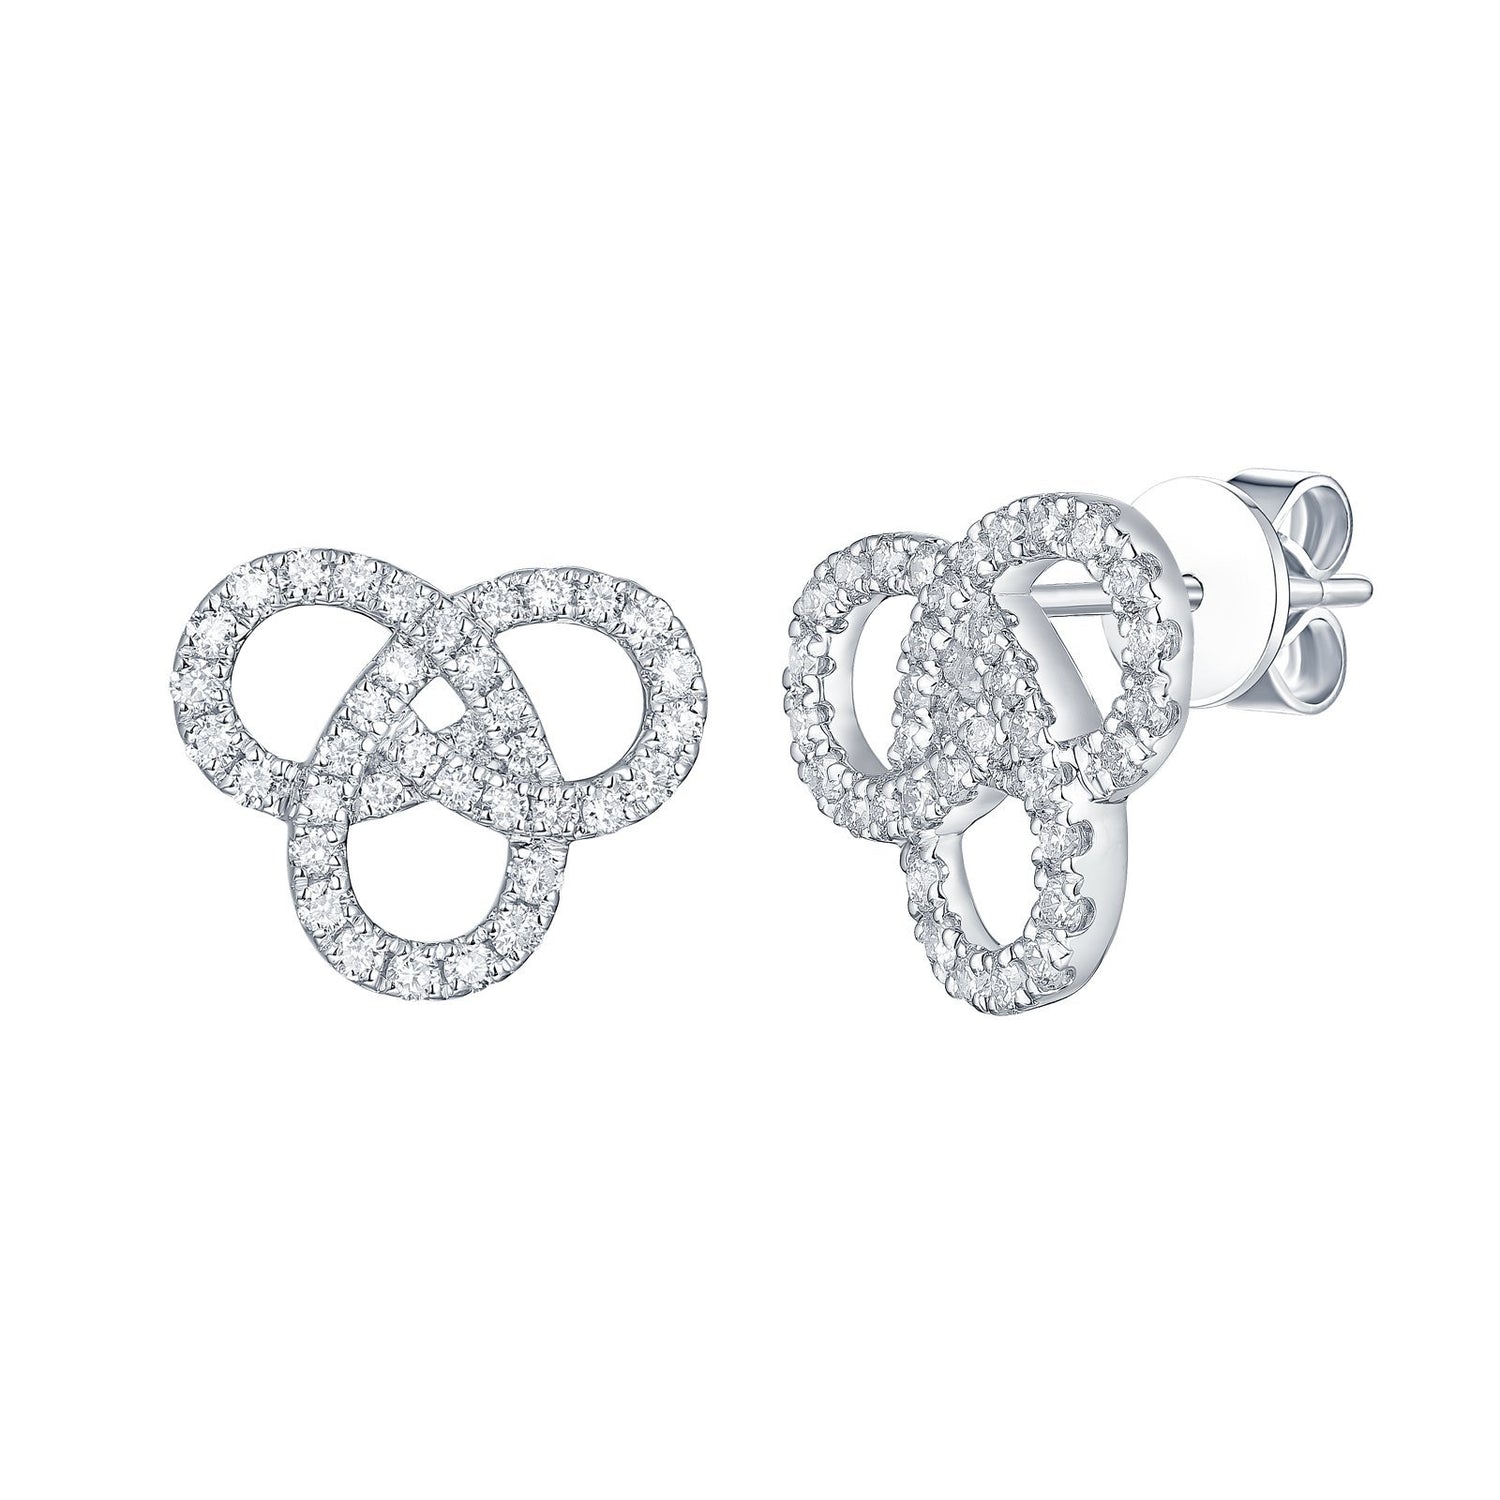 Earrings 1021 Earrings Analucia Beltran Diamonds